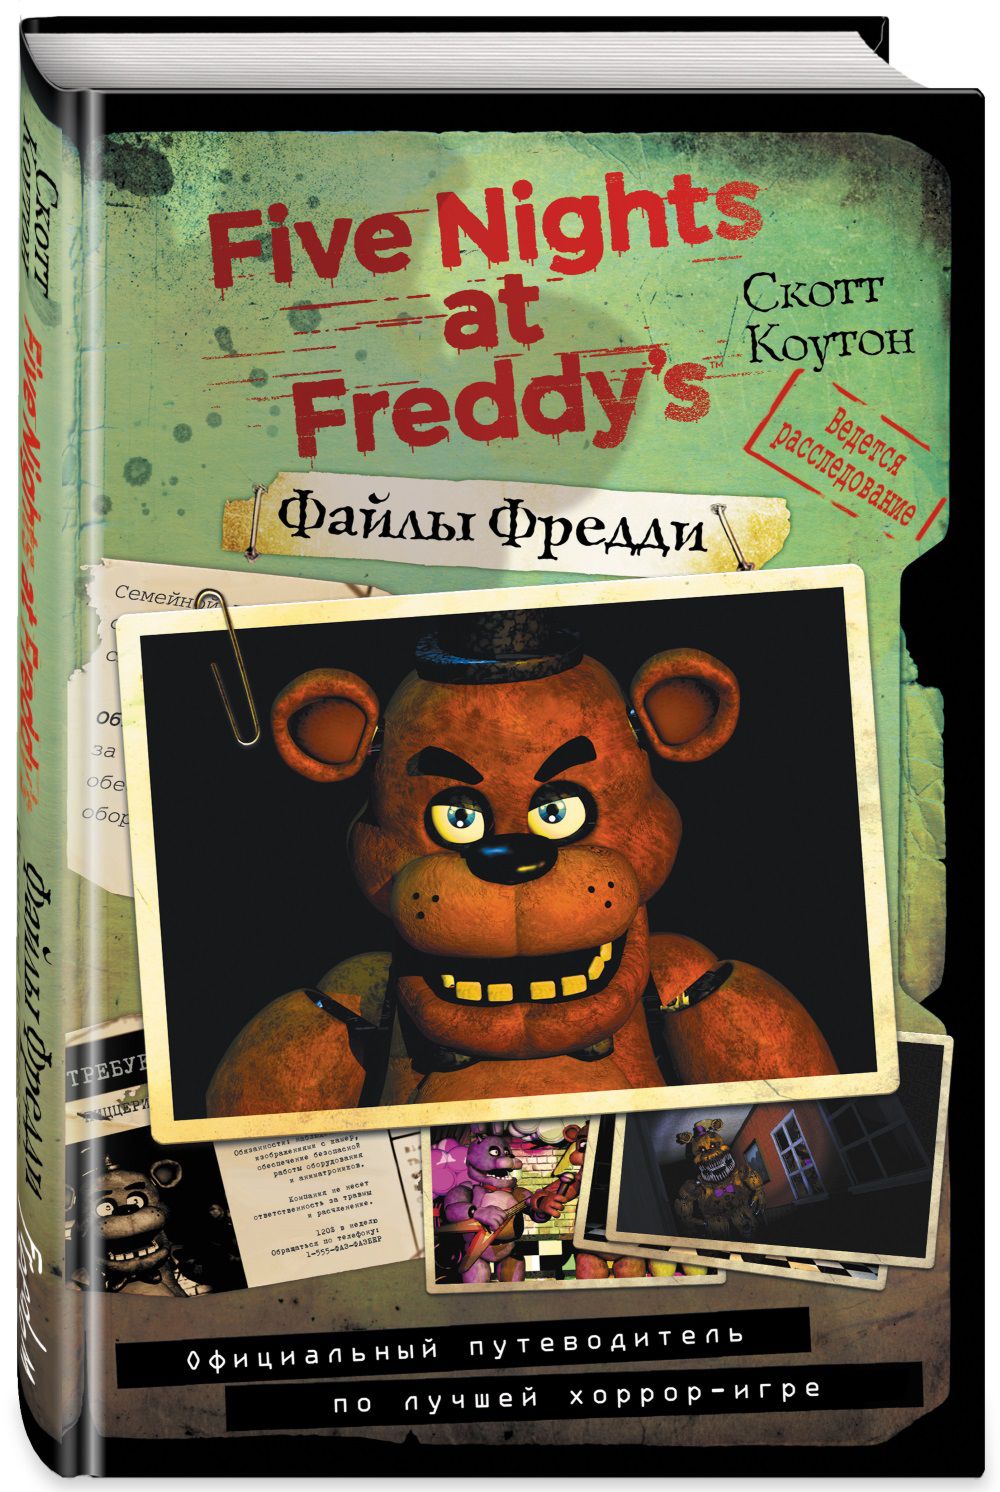 Five Nights At Freddy's:Файлы Фредди – Официальный путеводитель по лучшей хоррор-игре